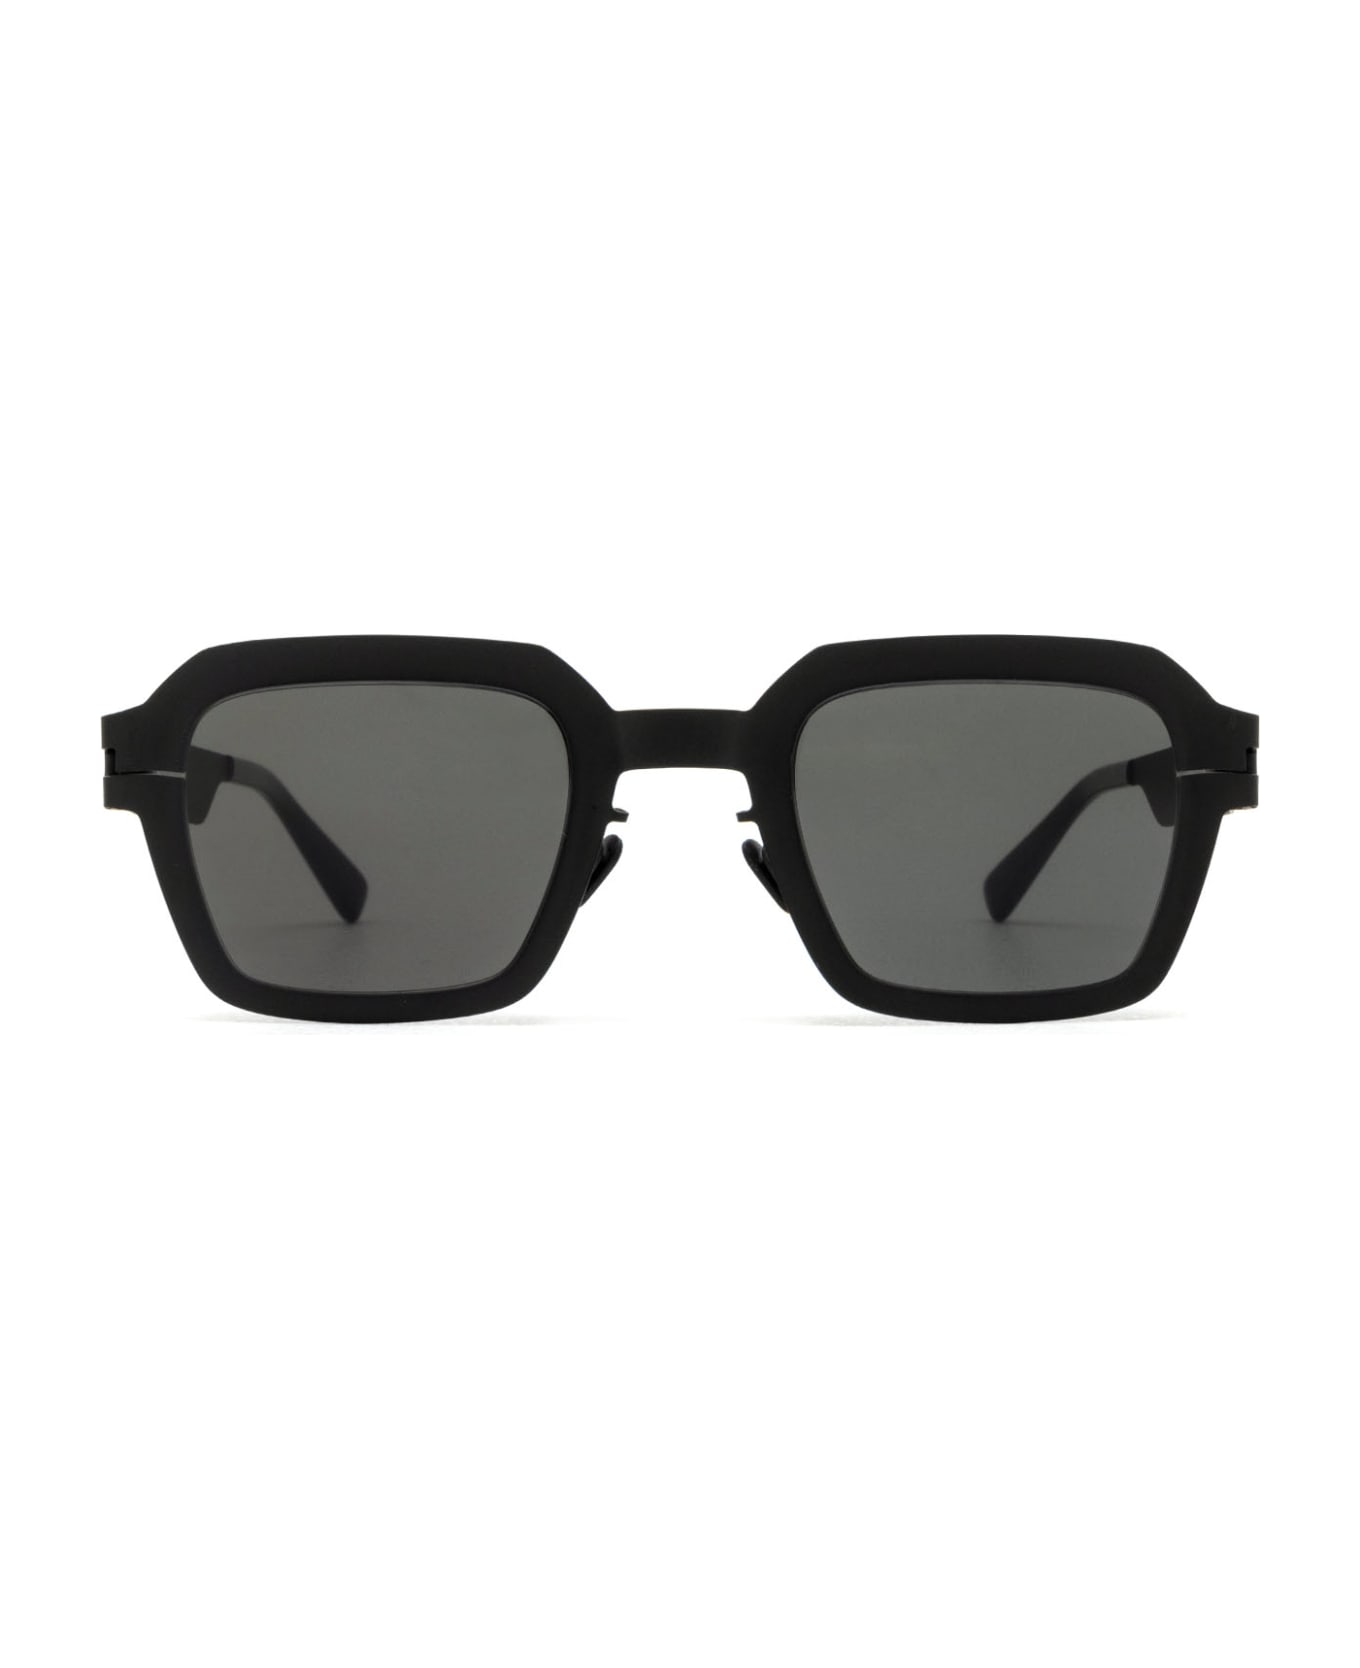 Mykita Mott Sun Black Sunglasses - Black